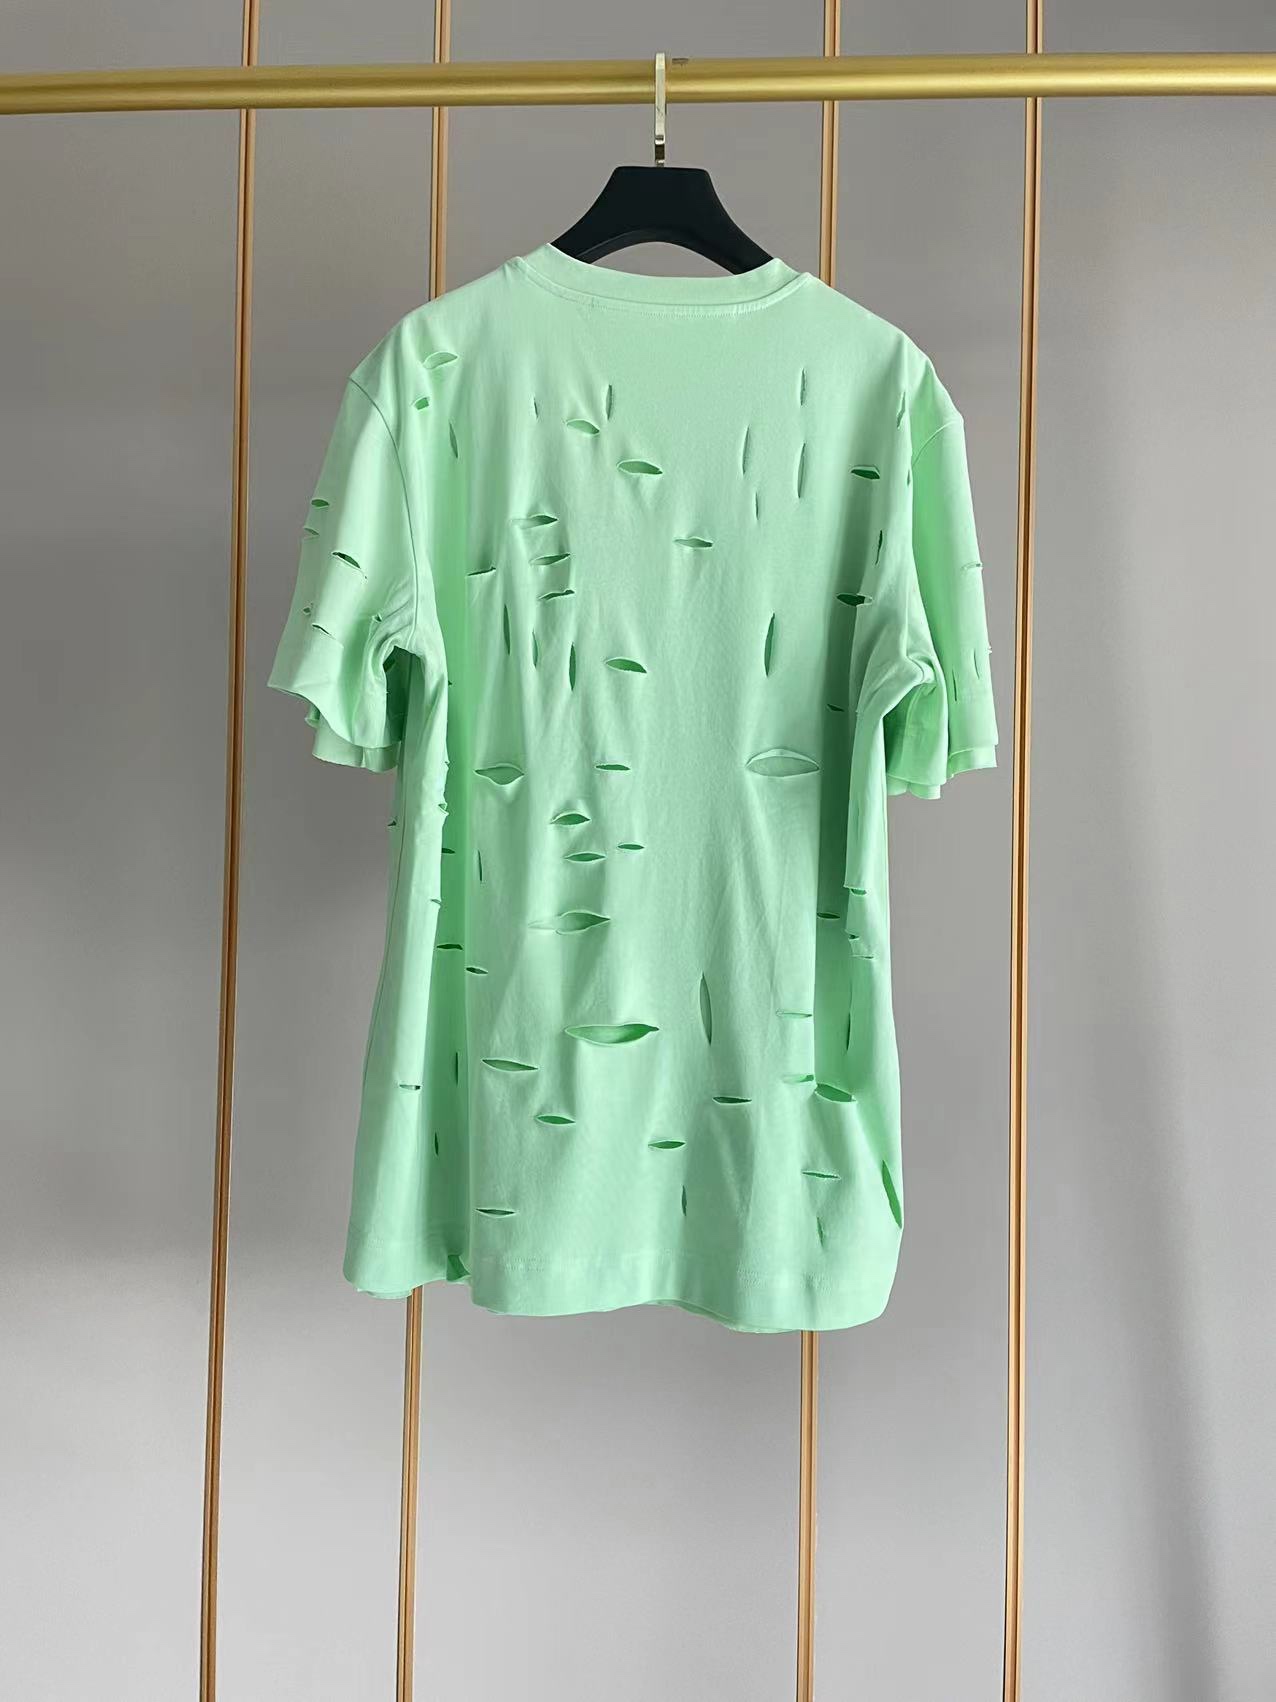 ジバンシィ トップス偽物 純綿 Tシャツ 半袖 シンプル ダメージ加工のデザイン 5色可選 グリーン_2